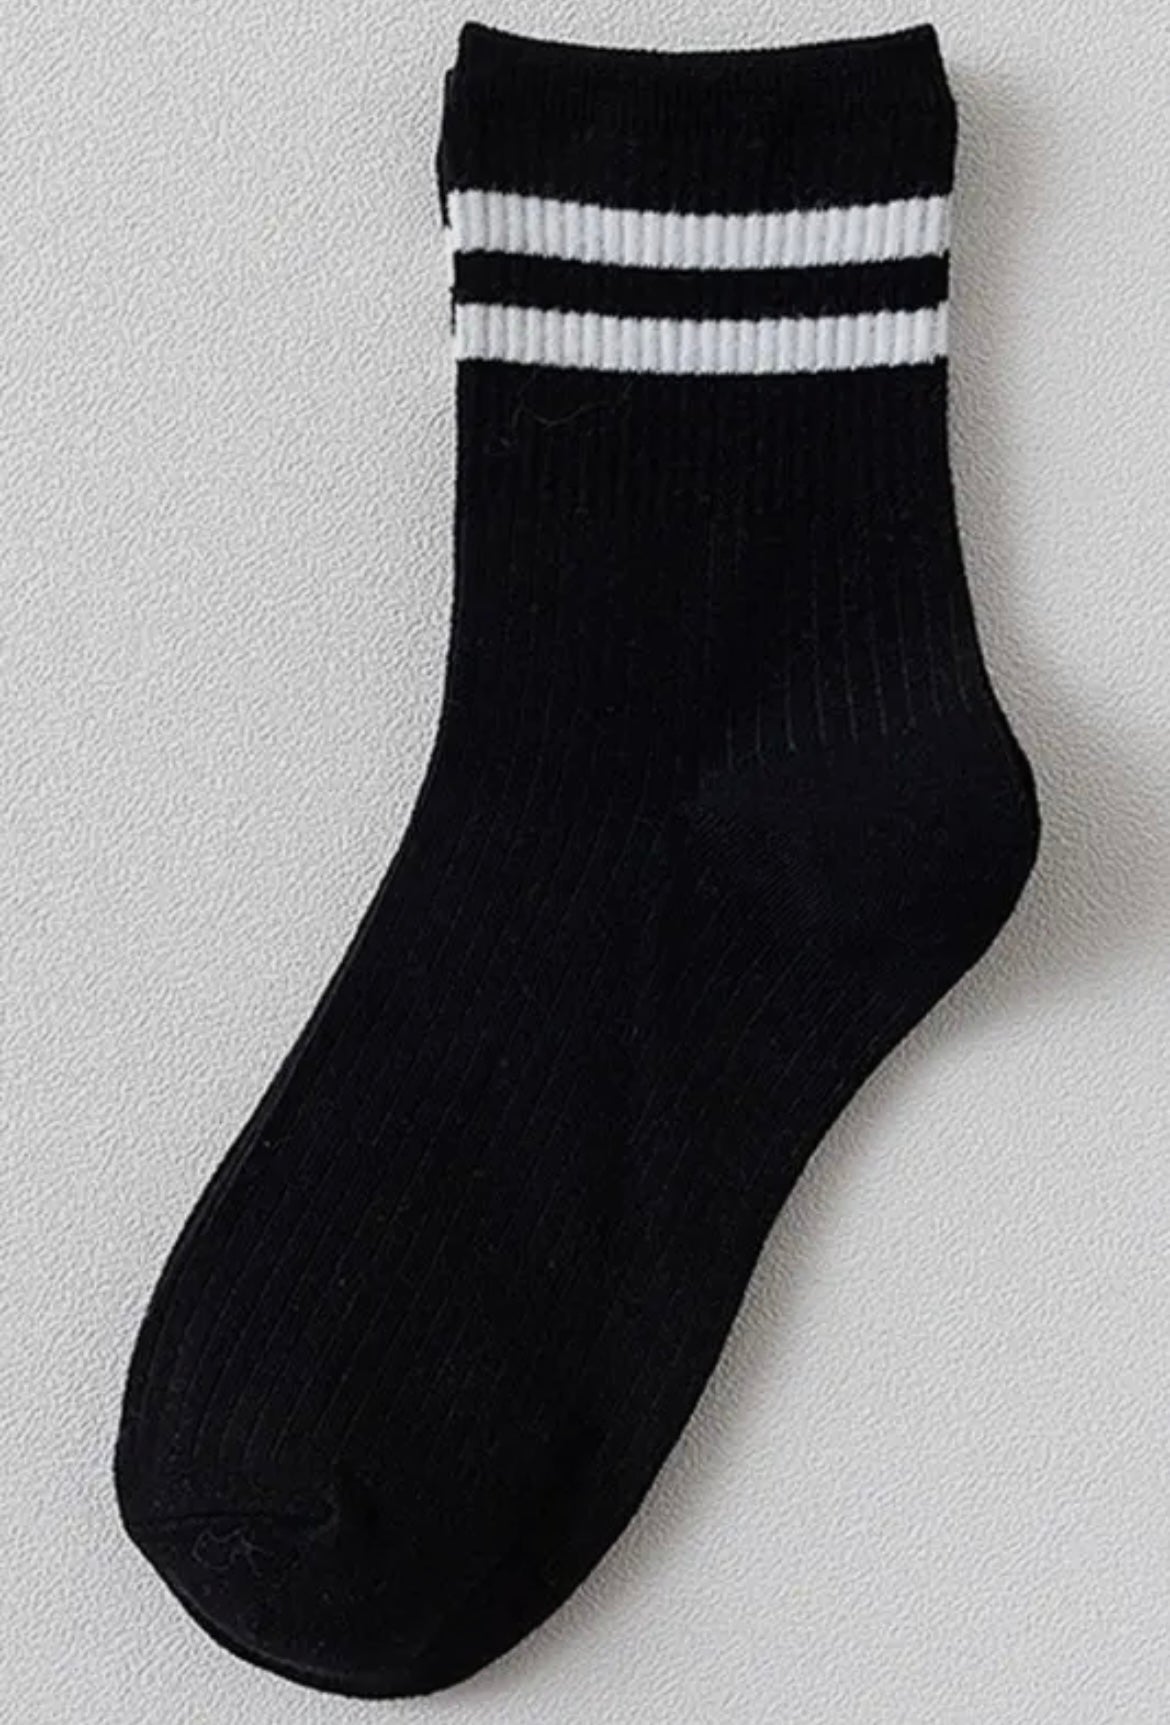 Basic White Ankle Sock